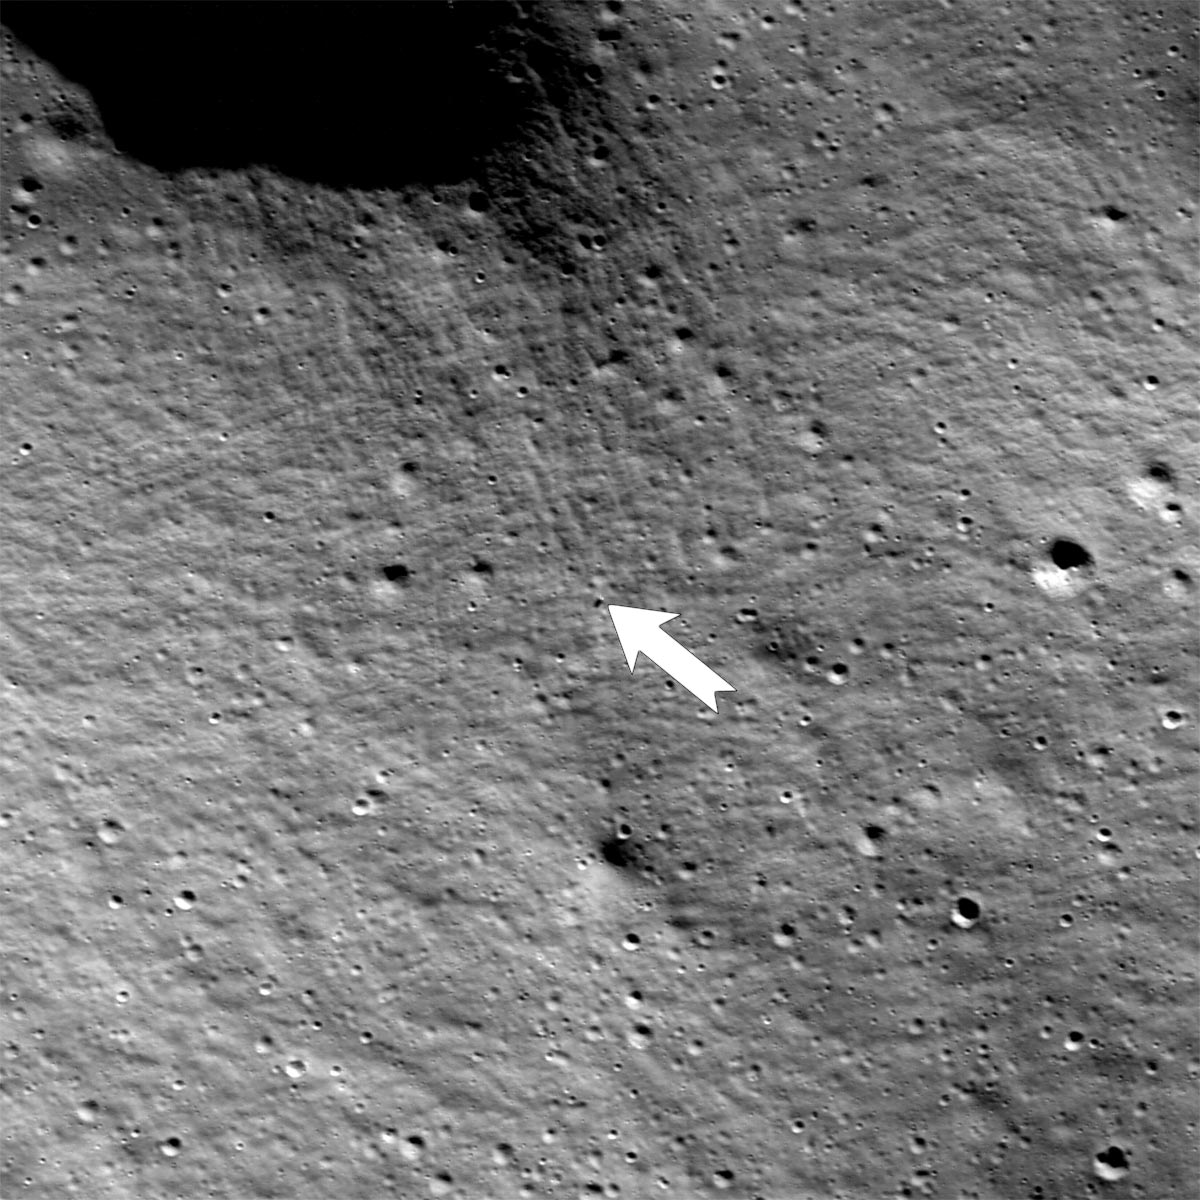 LRO-Views-Odysseus-Landing-Site-on-Moon-Arrow.jpg